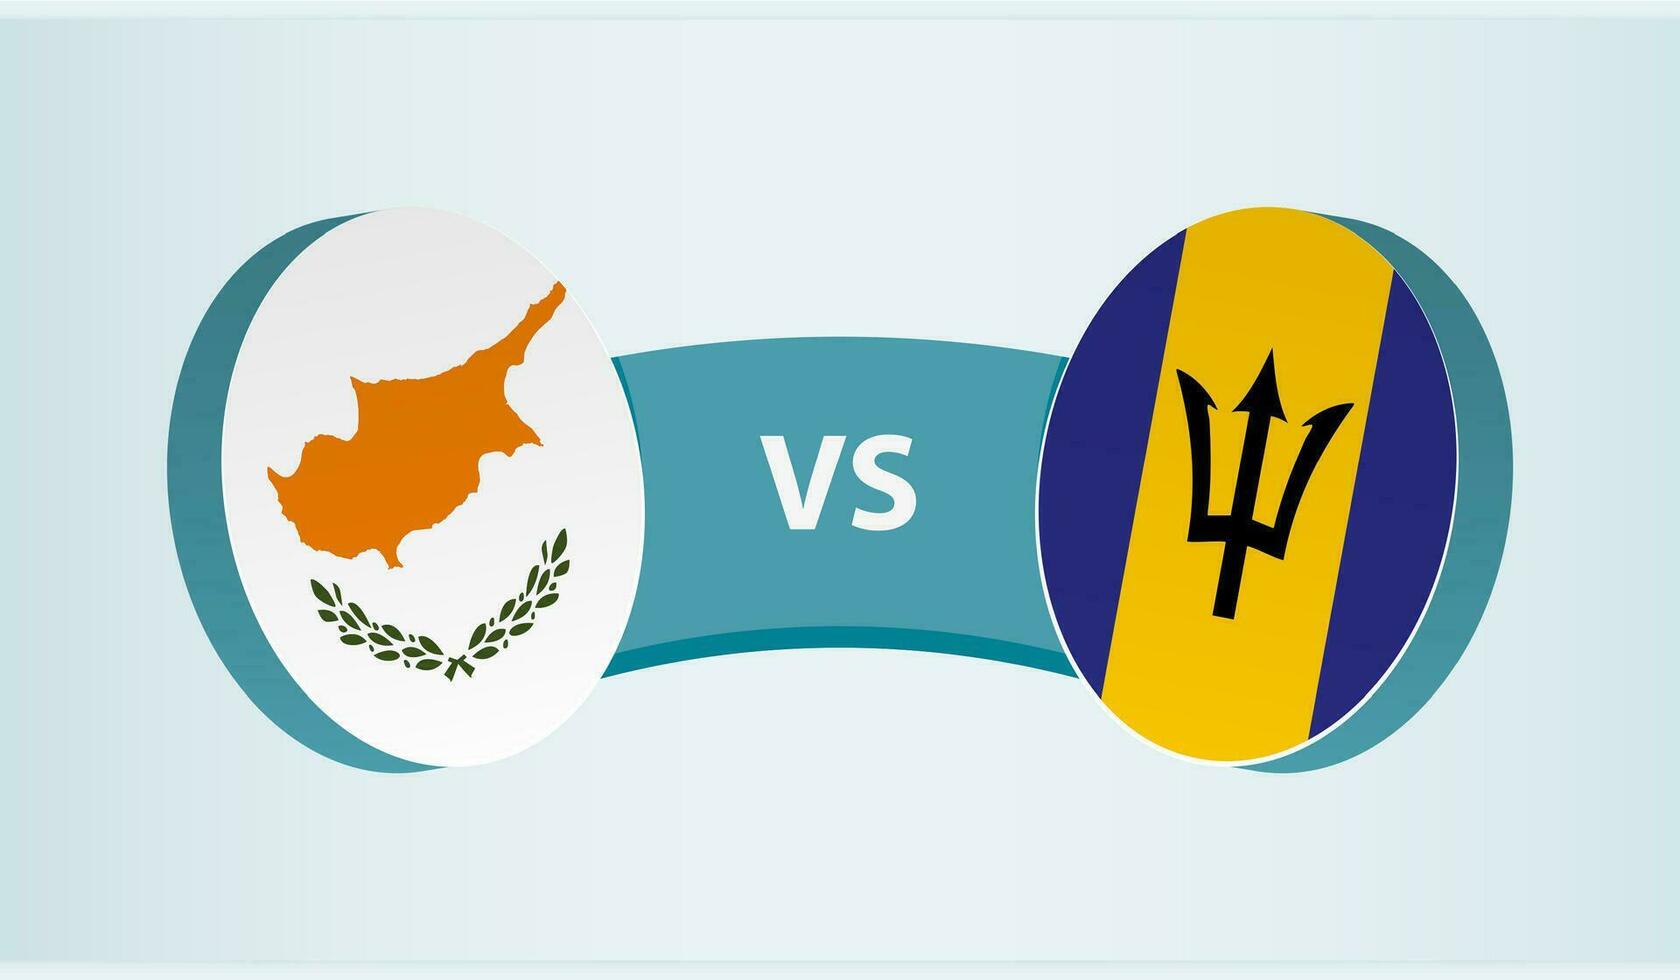 Cyprus versus Barbados, team sport- wedstrijd concept. vector